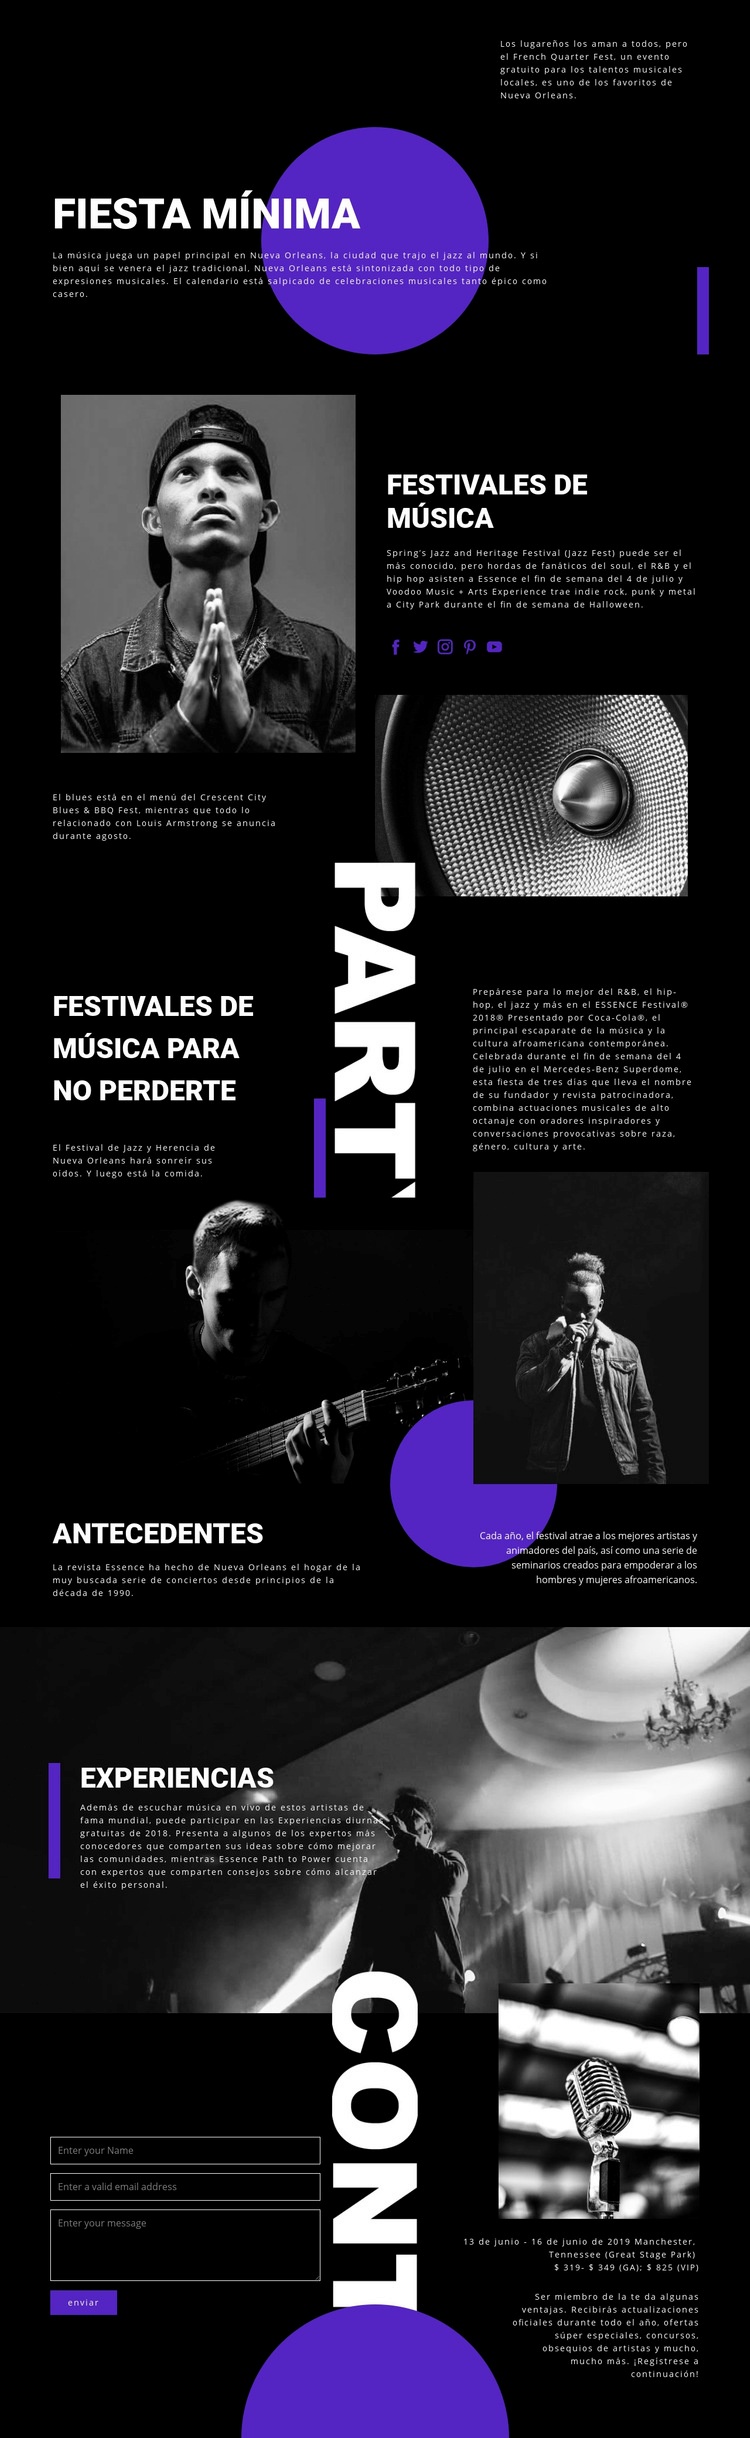 Festival de Música Maqueta de sitio web